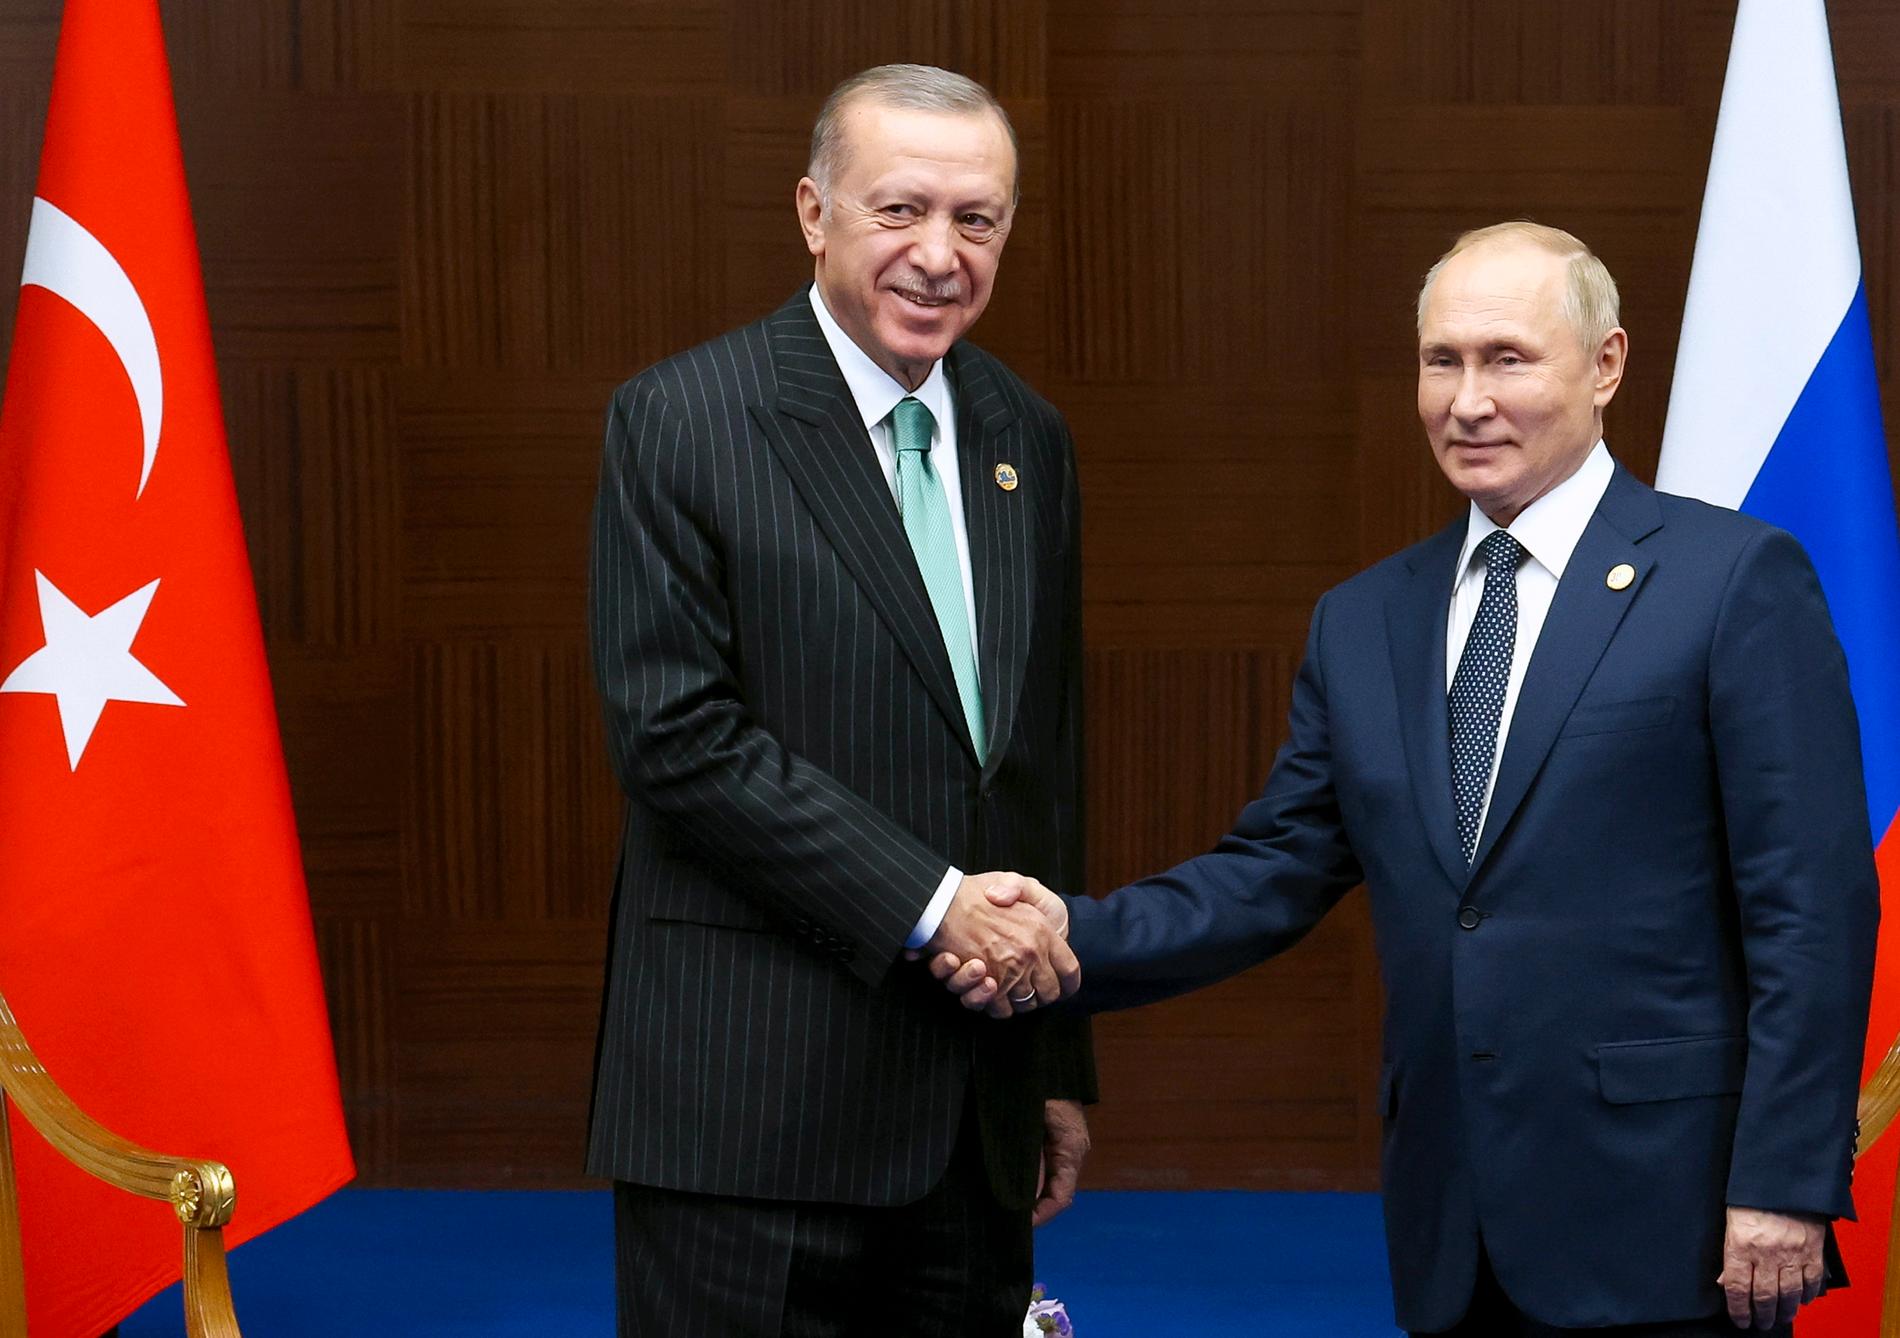 Turkiets auktoritäre president verkar mer intresserad av att vidmakthålla sina goda relationer med Vladimir Putin än med sina vänner i Nato.